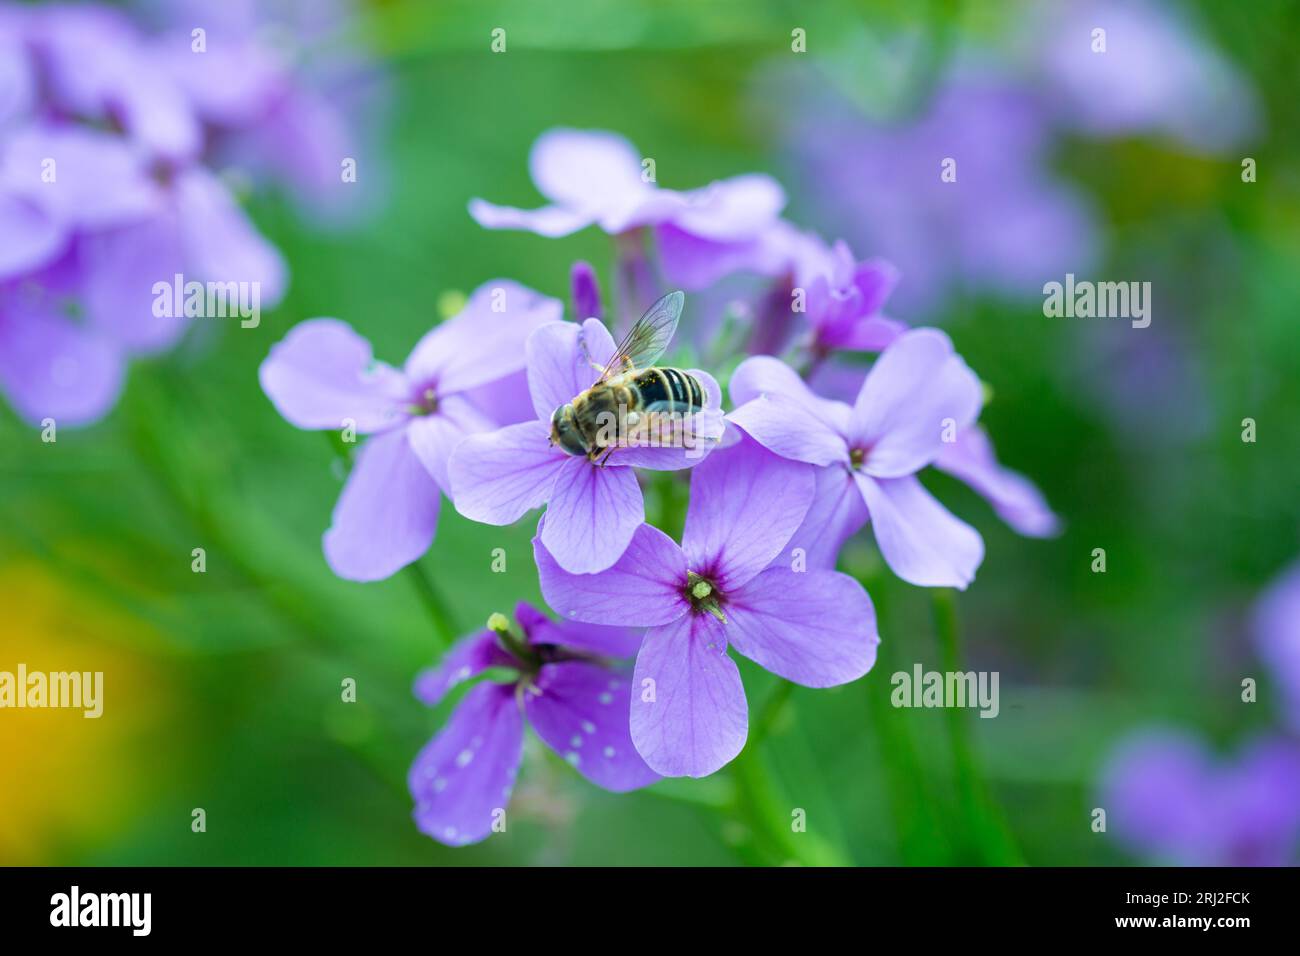 Concept de nature - Hoverfly peut-être Eristalis nemorum se nourrissant sur une plante à fleurs de rêve Damask-violet ou Dames Rocket. Banque D'Images